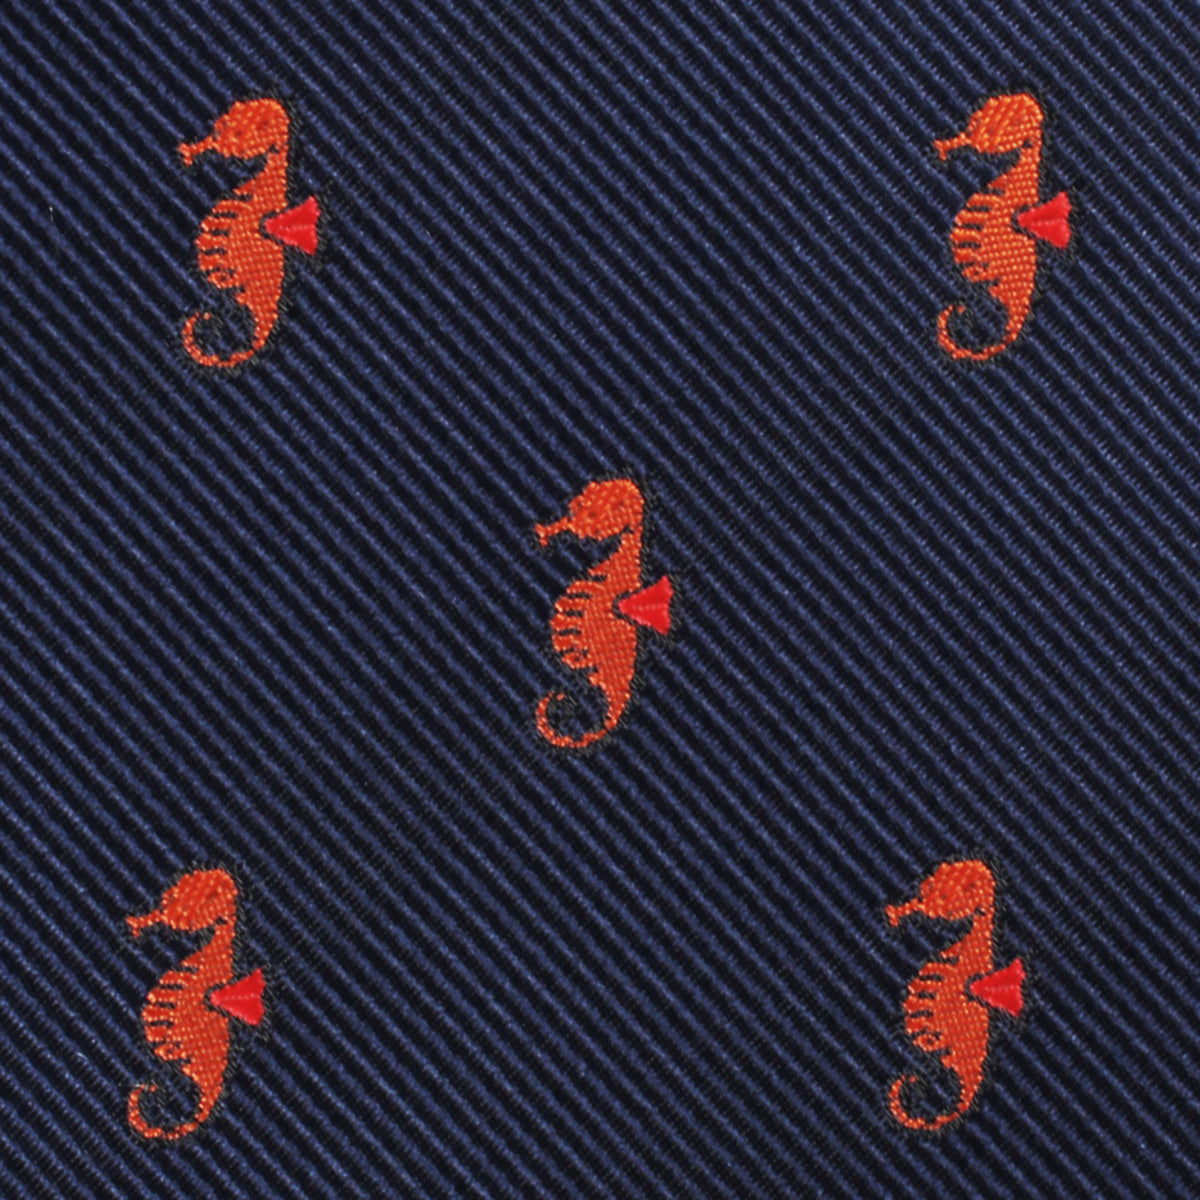 Tropical Seahorse Necktie Fabric